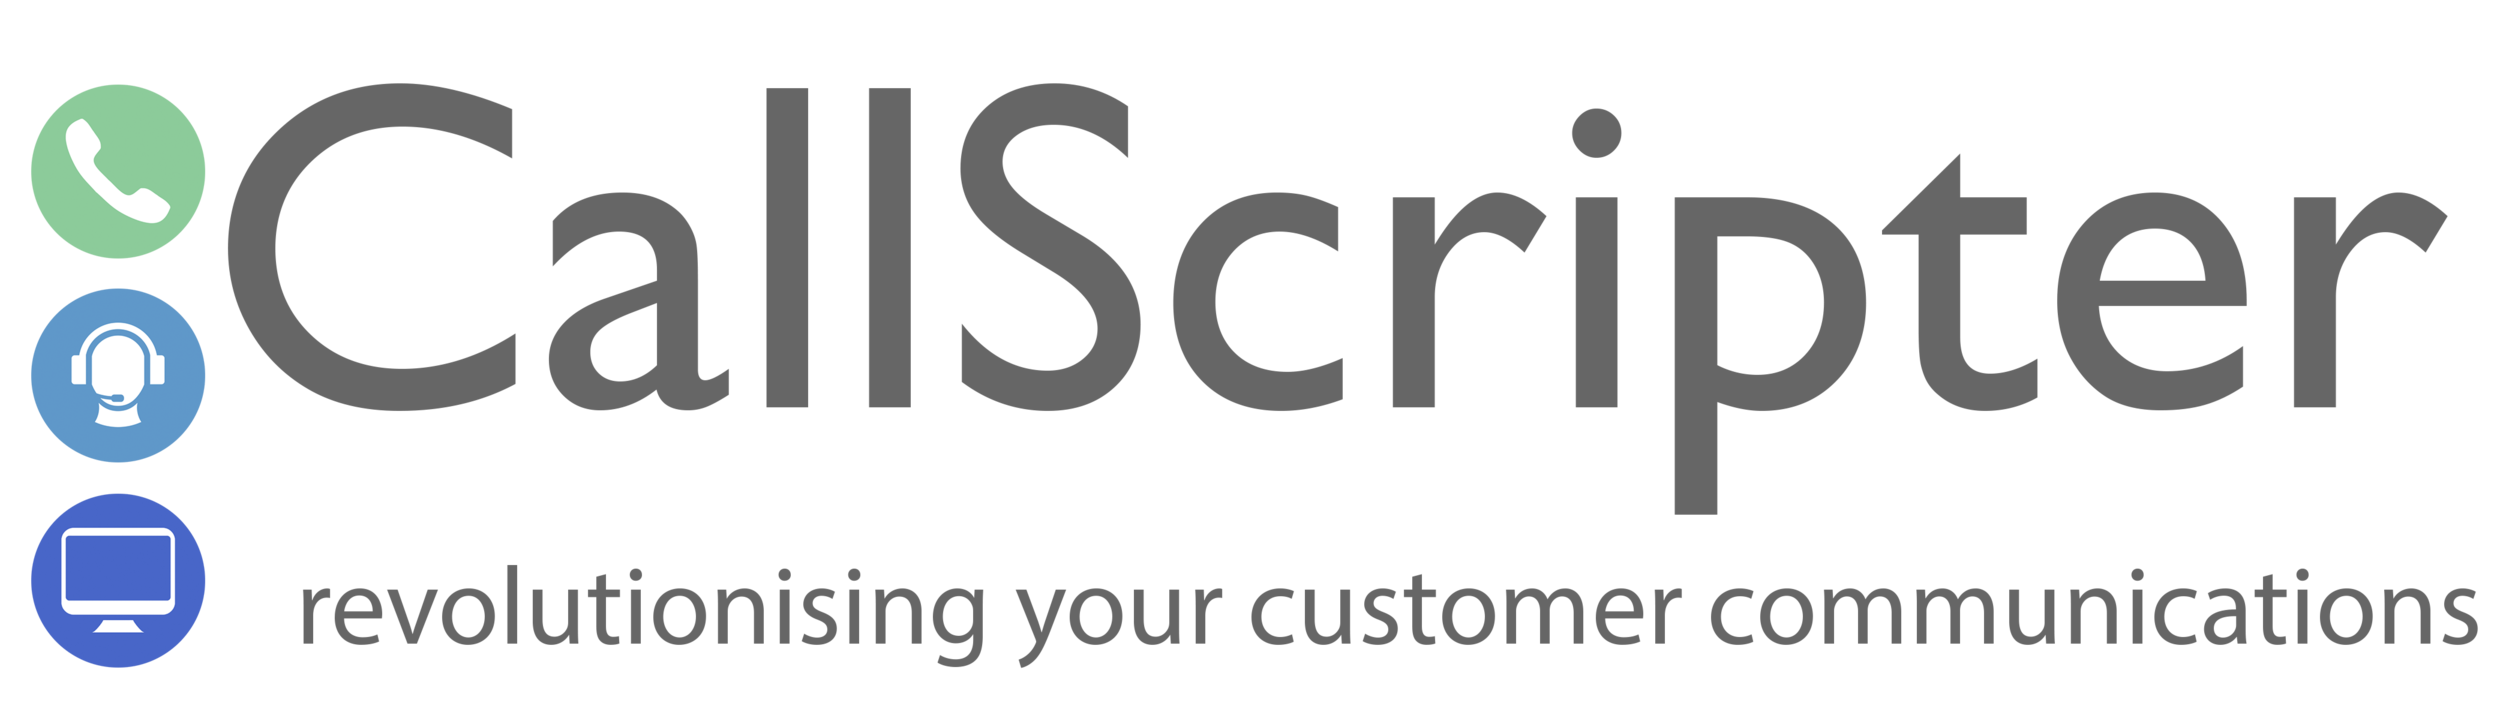 2015 CallScripter Logo.png